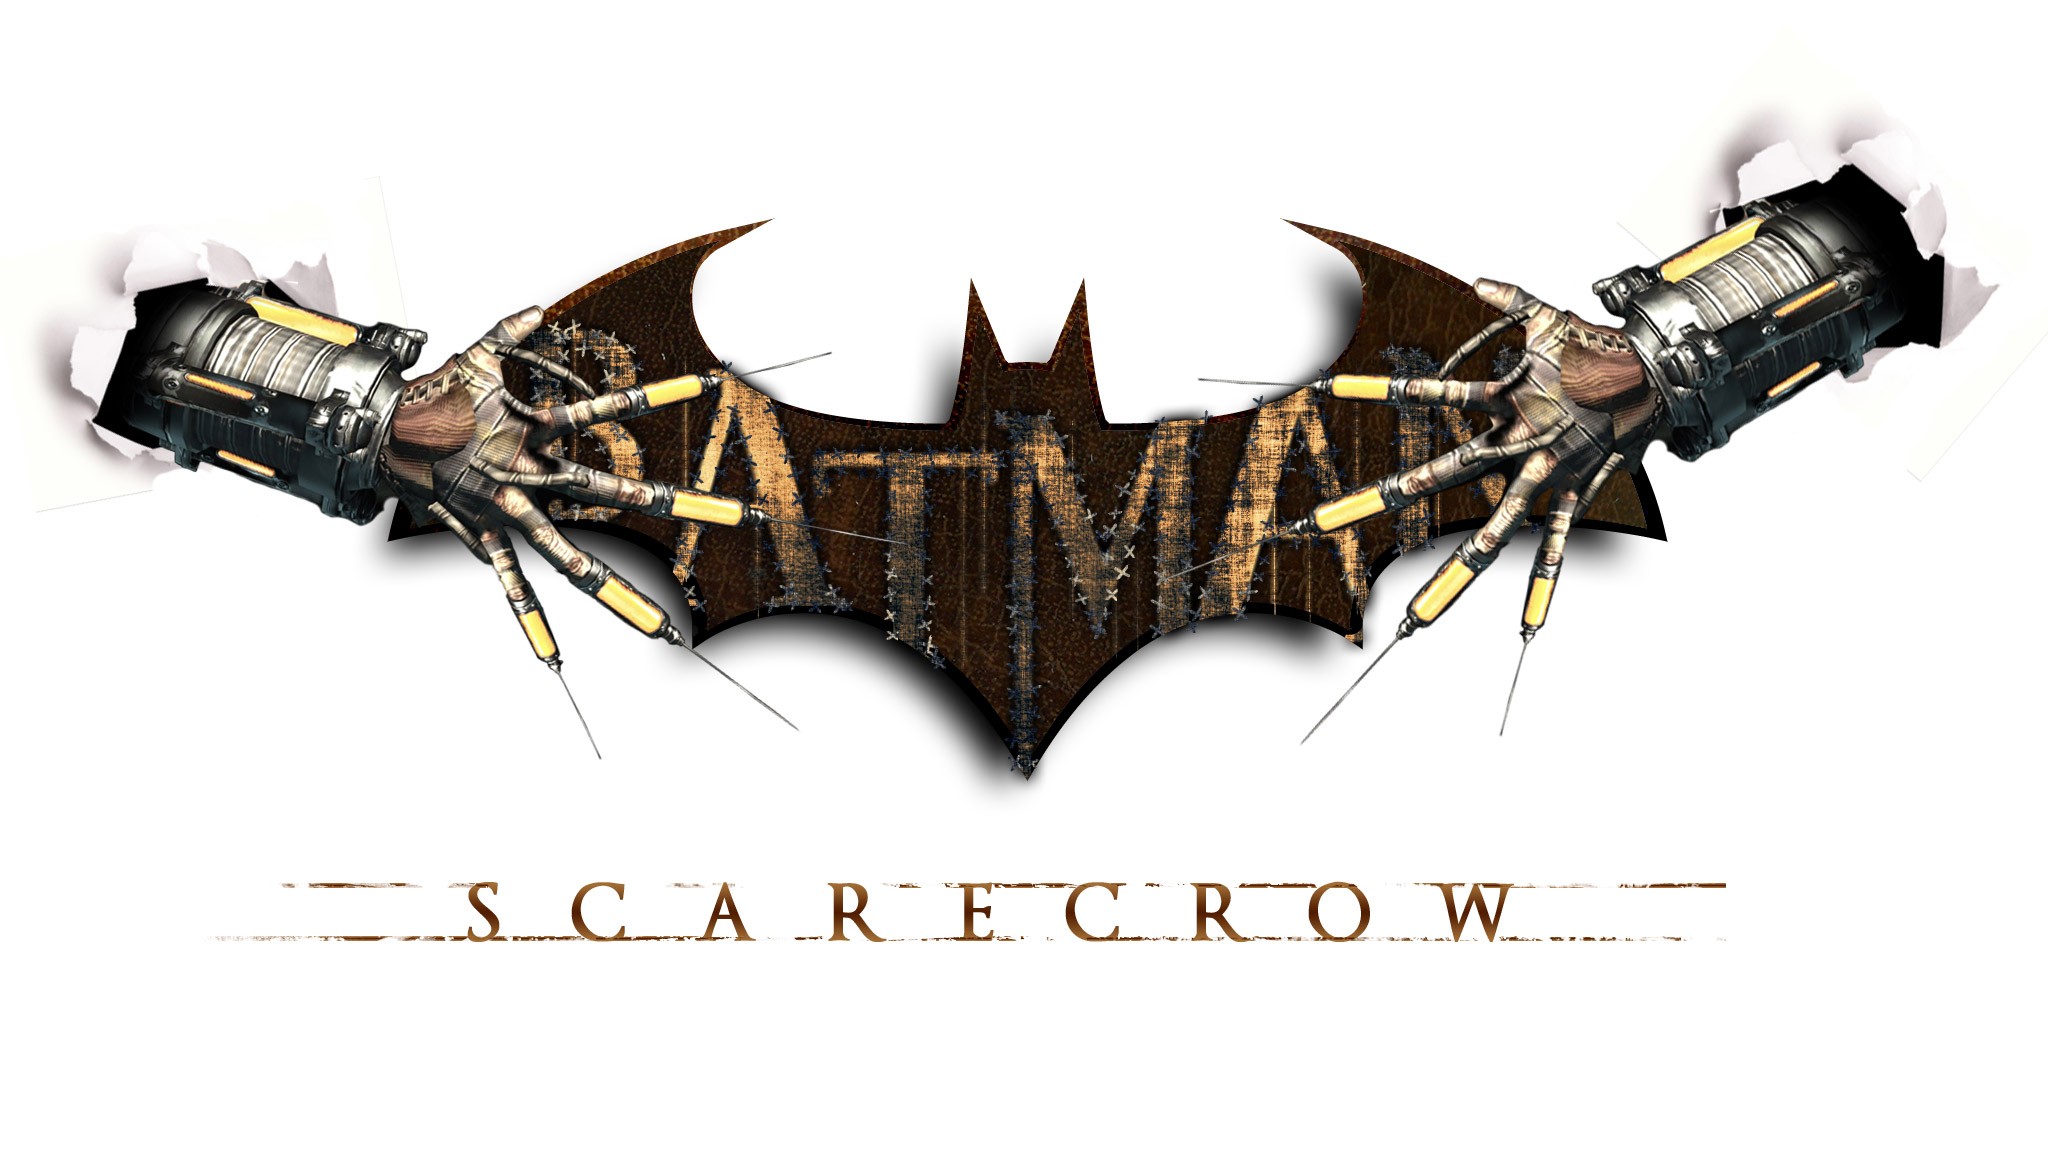 Descarga gratuita de fondo de pantalla para móvil de Batman: Arkham City, Hombre Murciélago, Videojuego.